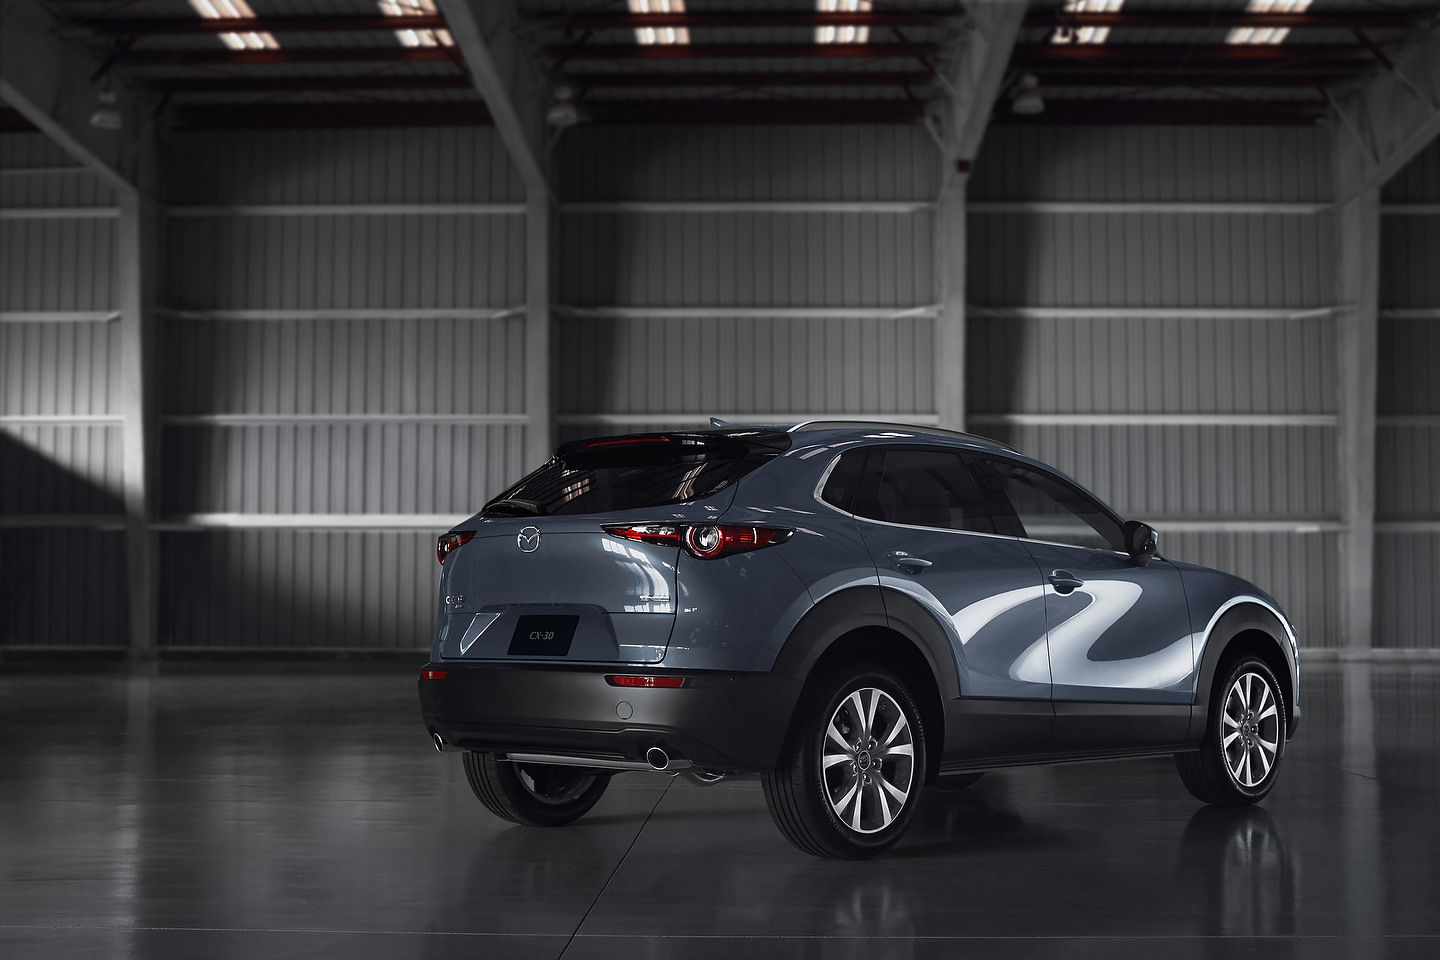 2020 Mazda CX-30 vs 2021 Kia Seltos: Better Performance for the CX-30